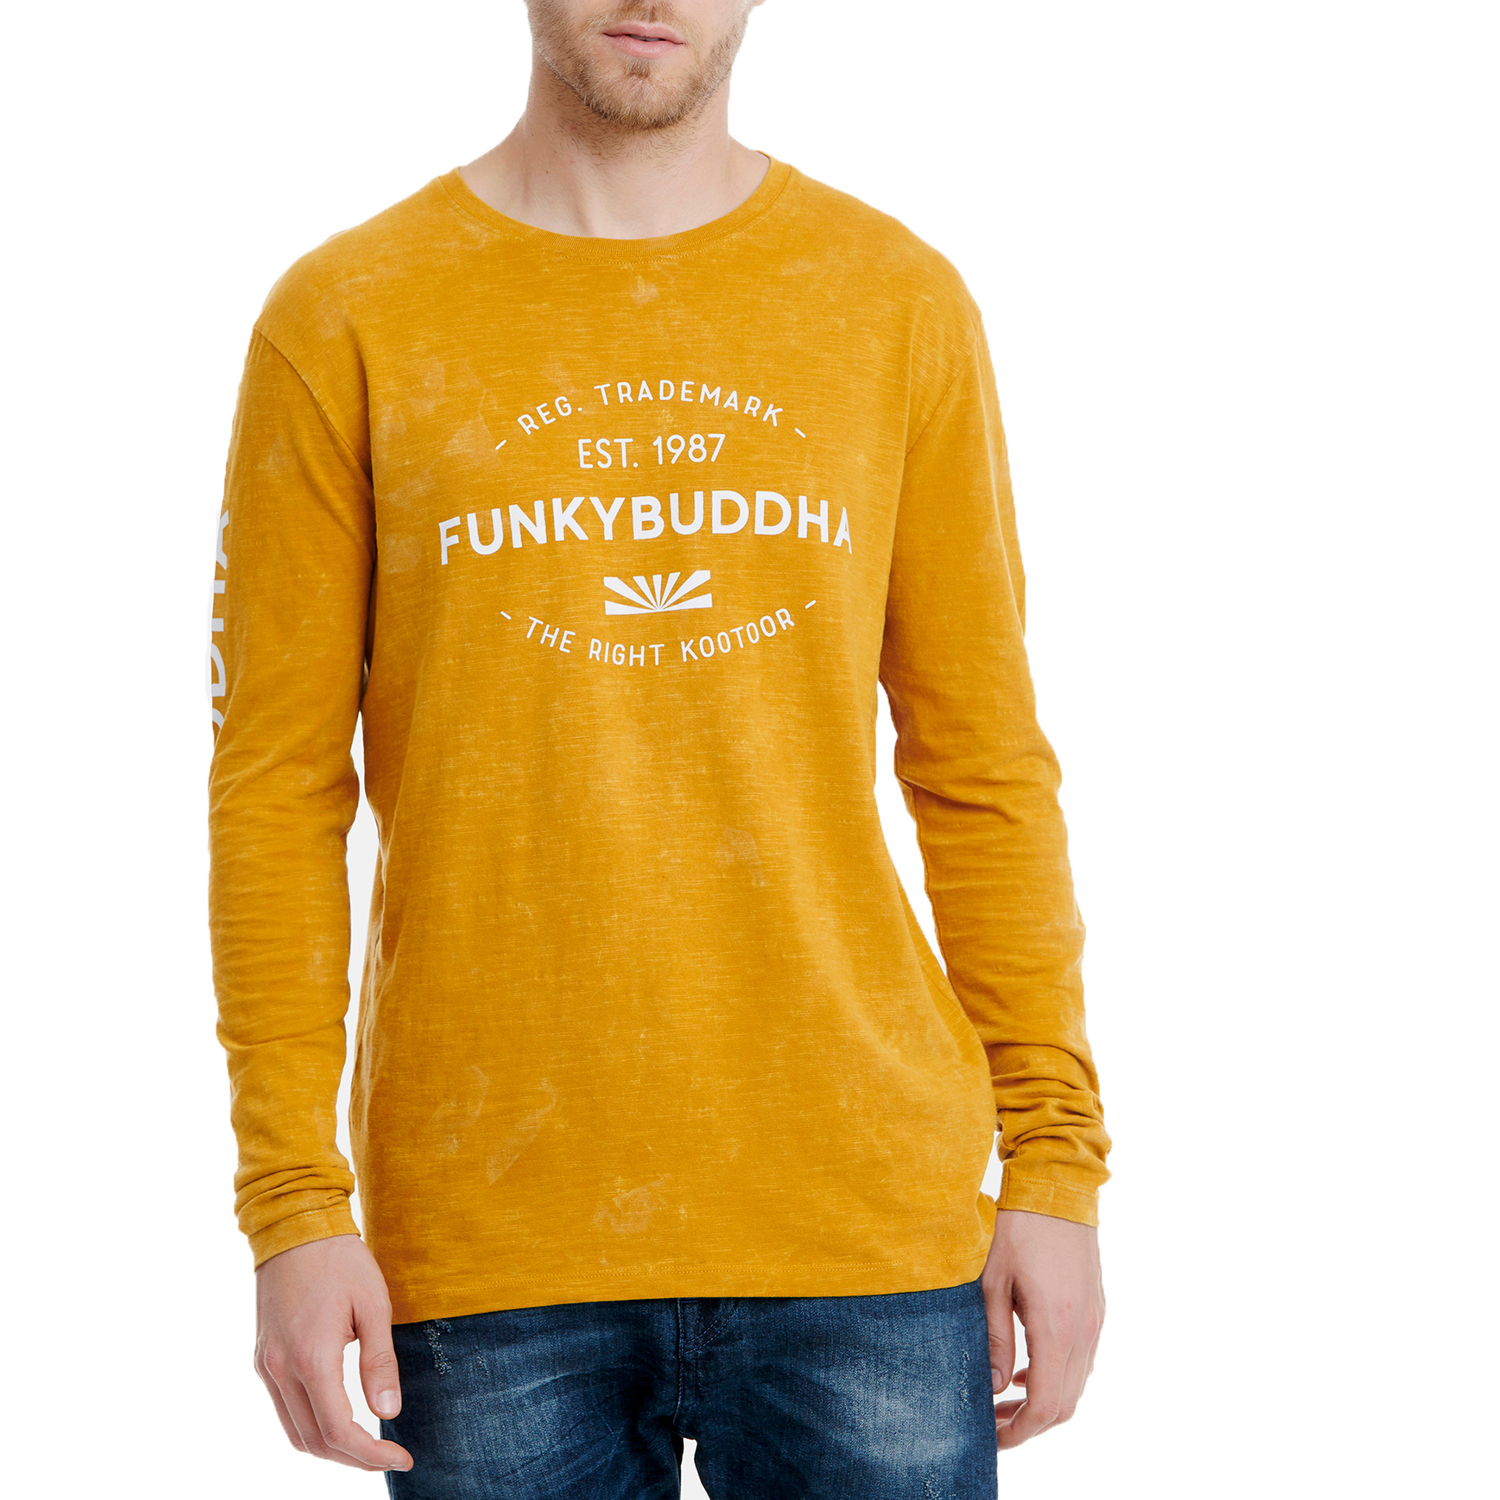 Ανδρικά/Ρούχα/Μπλούζες/Μακρυμάνικες FUNKY BUDDHA - Ανδρική μπλούζα FUNKY BUDDΗA κίτρινη